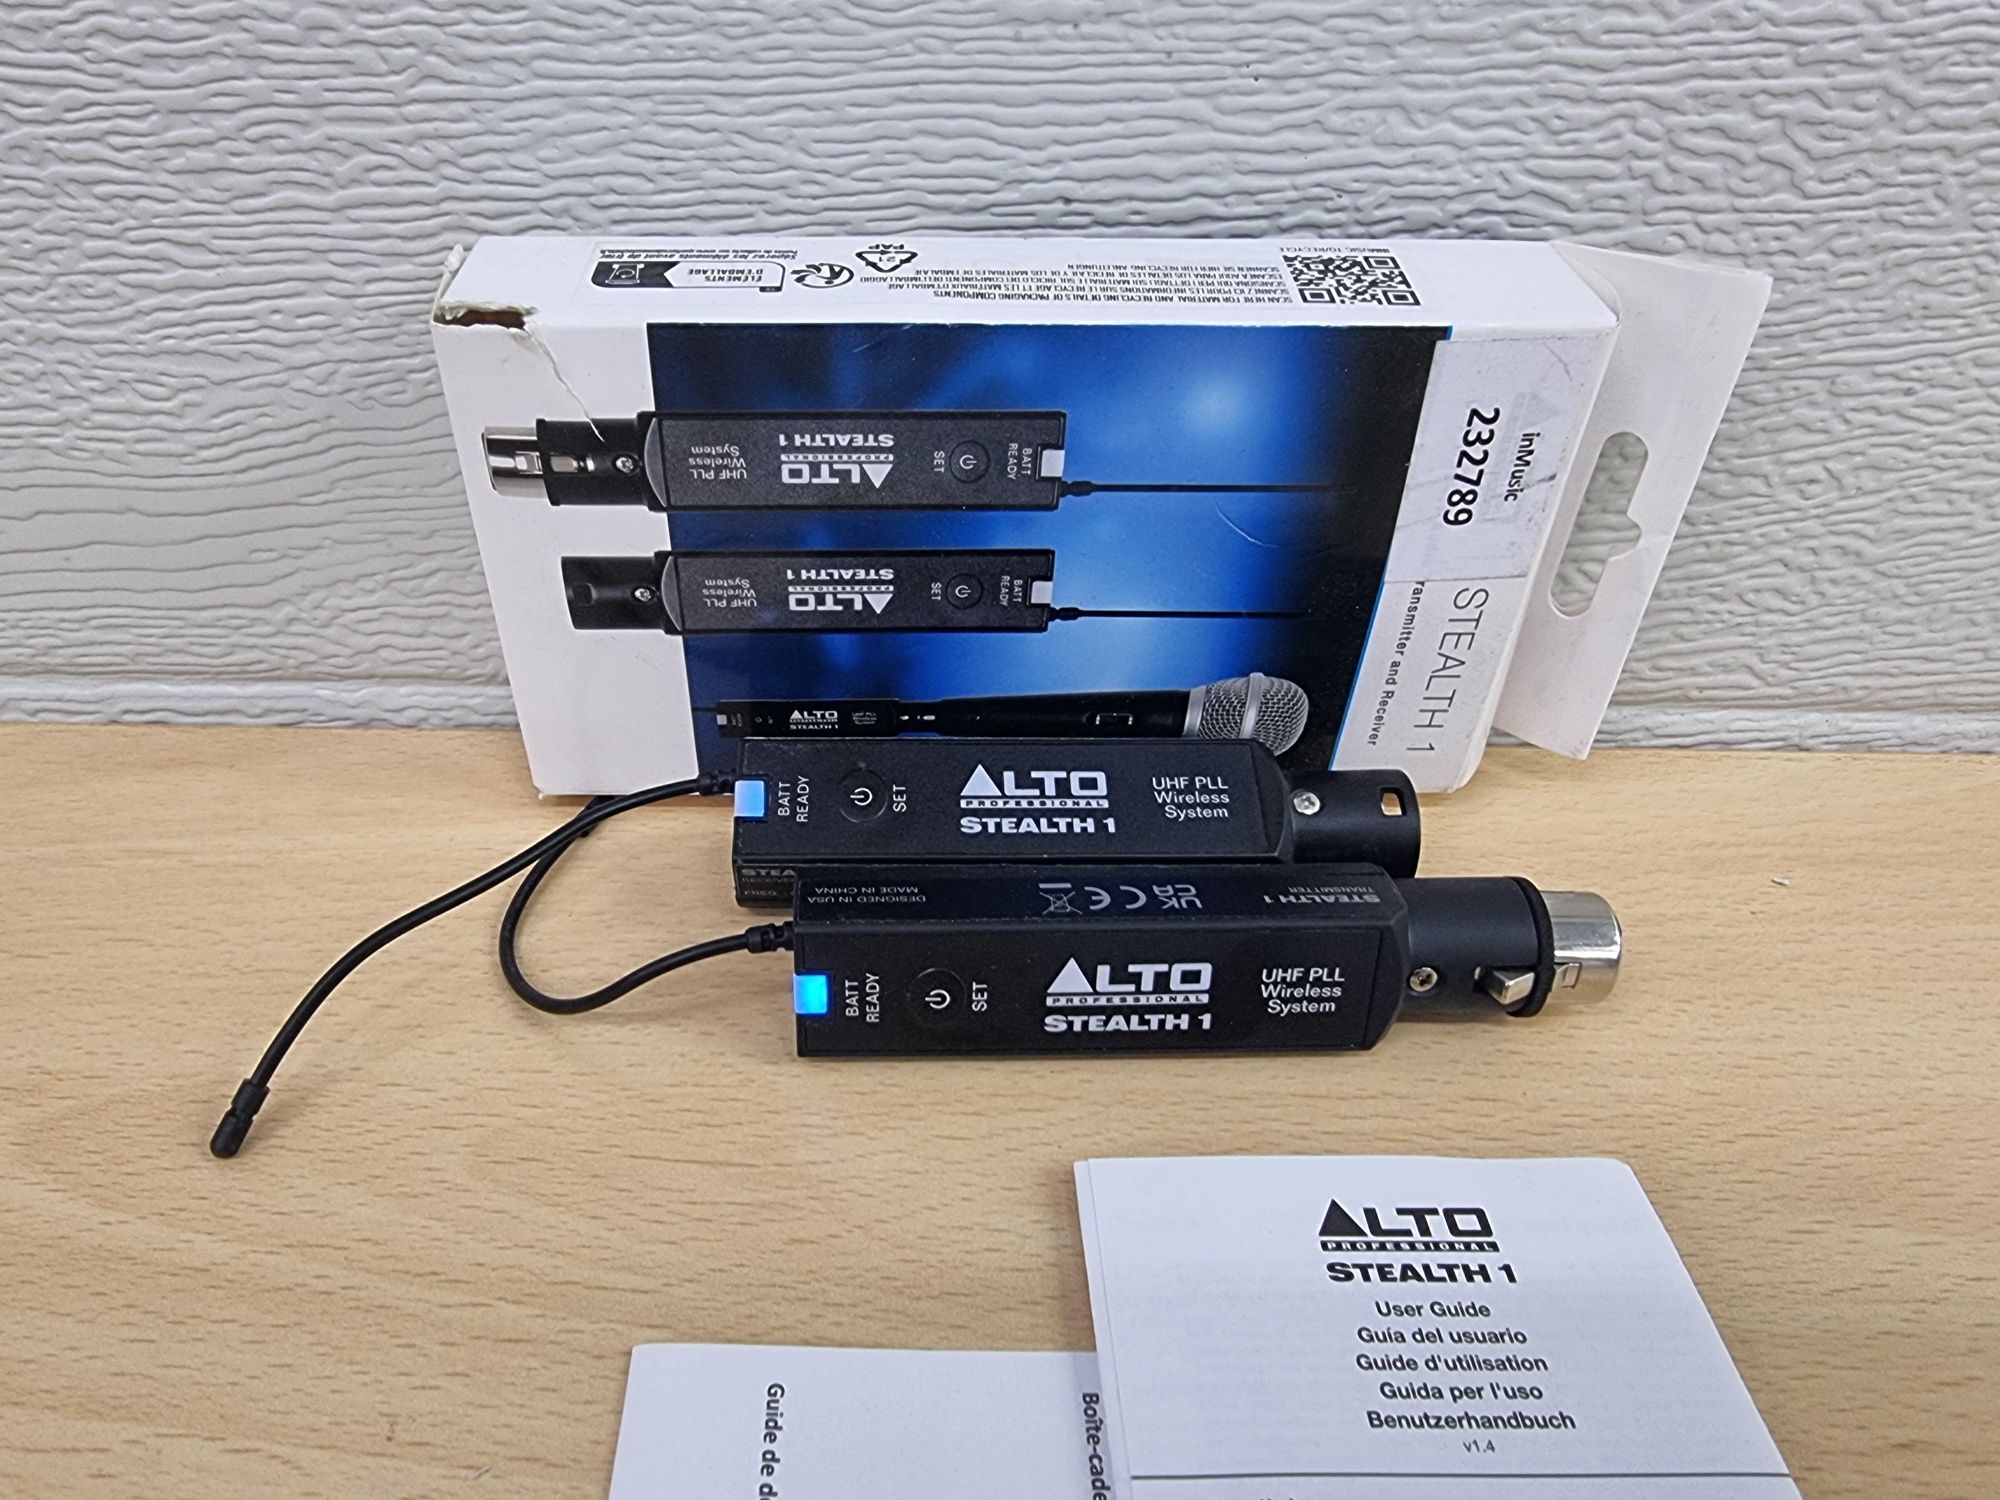 Alto Stealth 1 system bezprzewodowy do mikrofonu lub każdego audio xlr